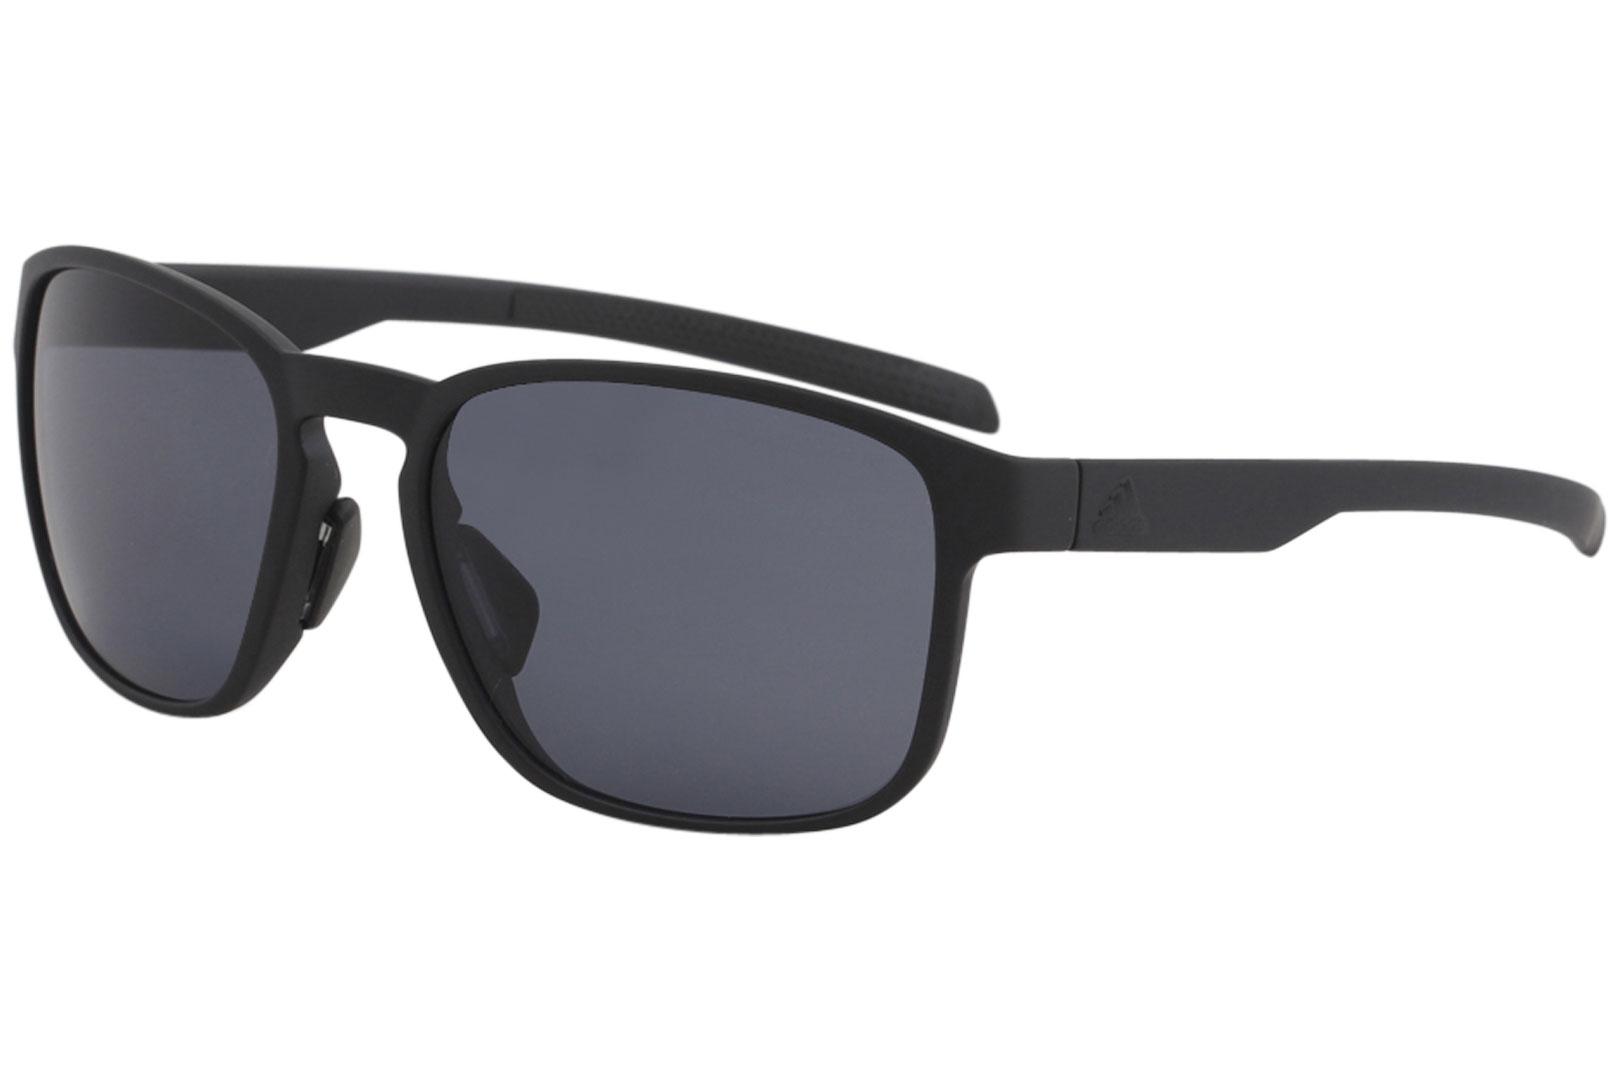 Adidas Protean AD32 AD/32 6500 Matte Coal Grey Sport Square Sunglasses 56mm